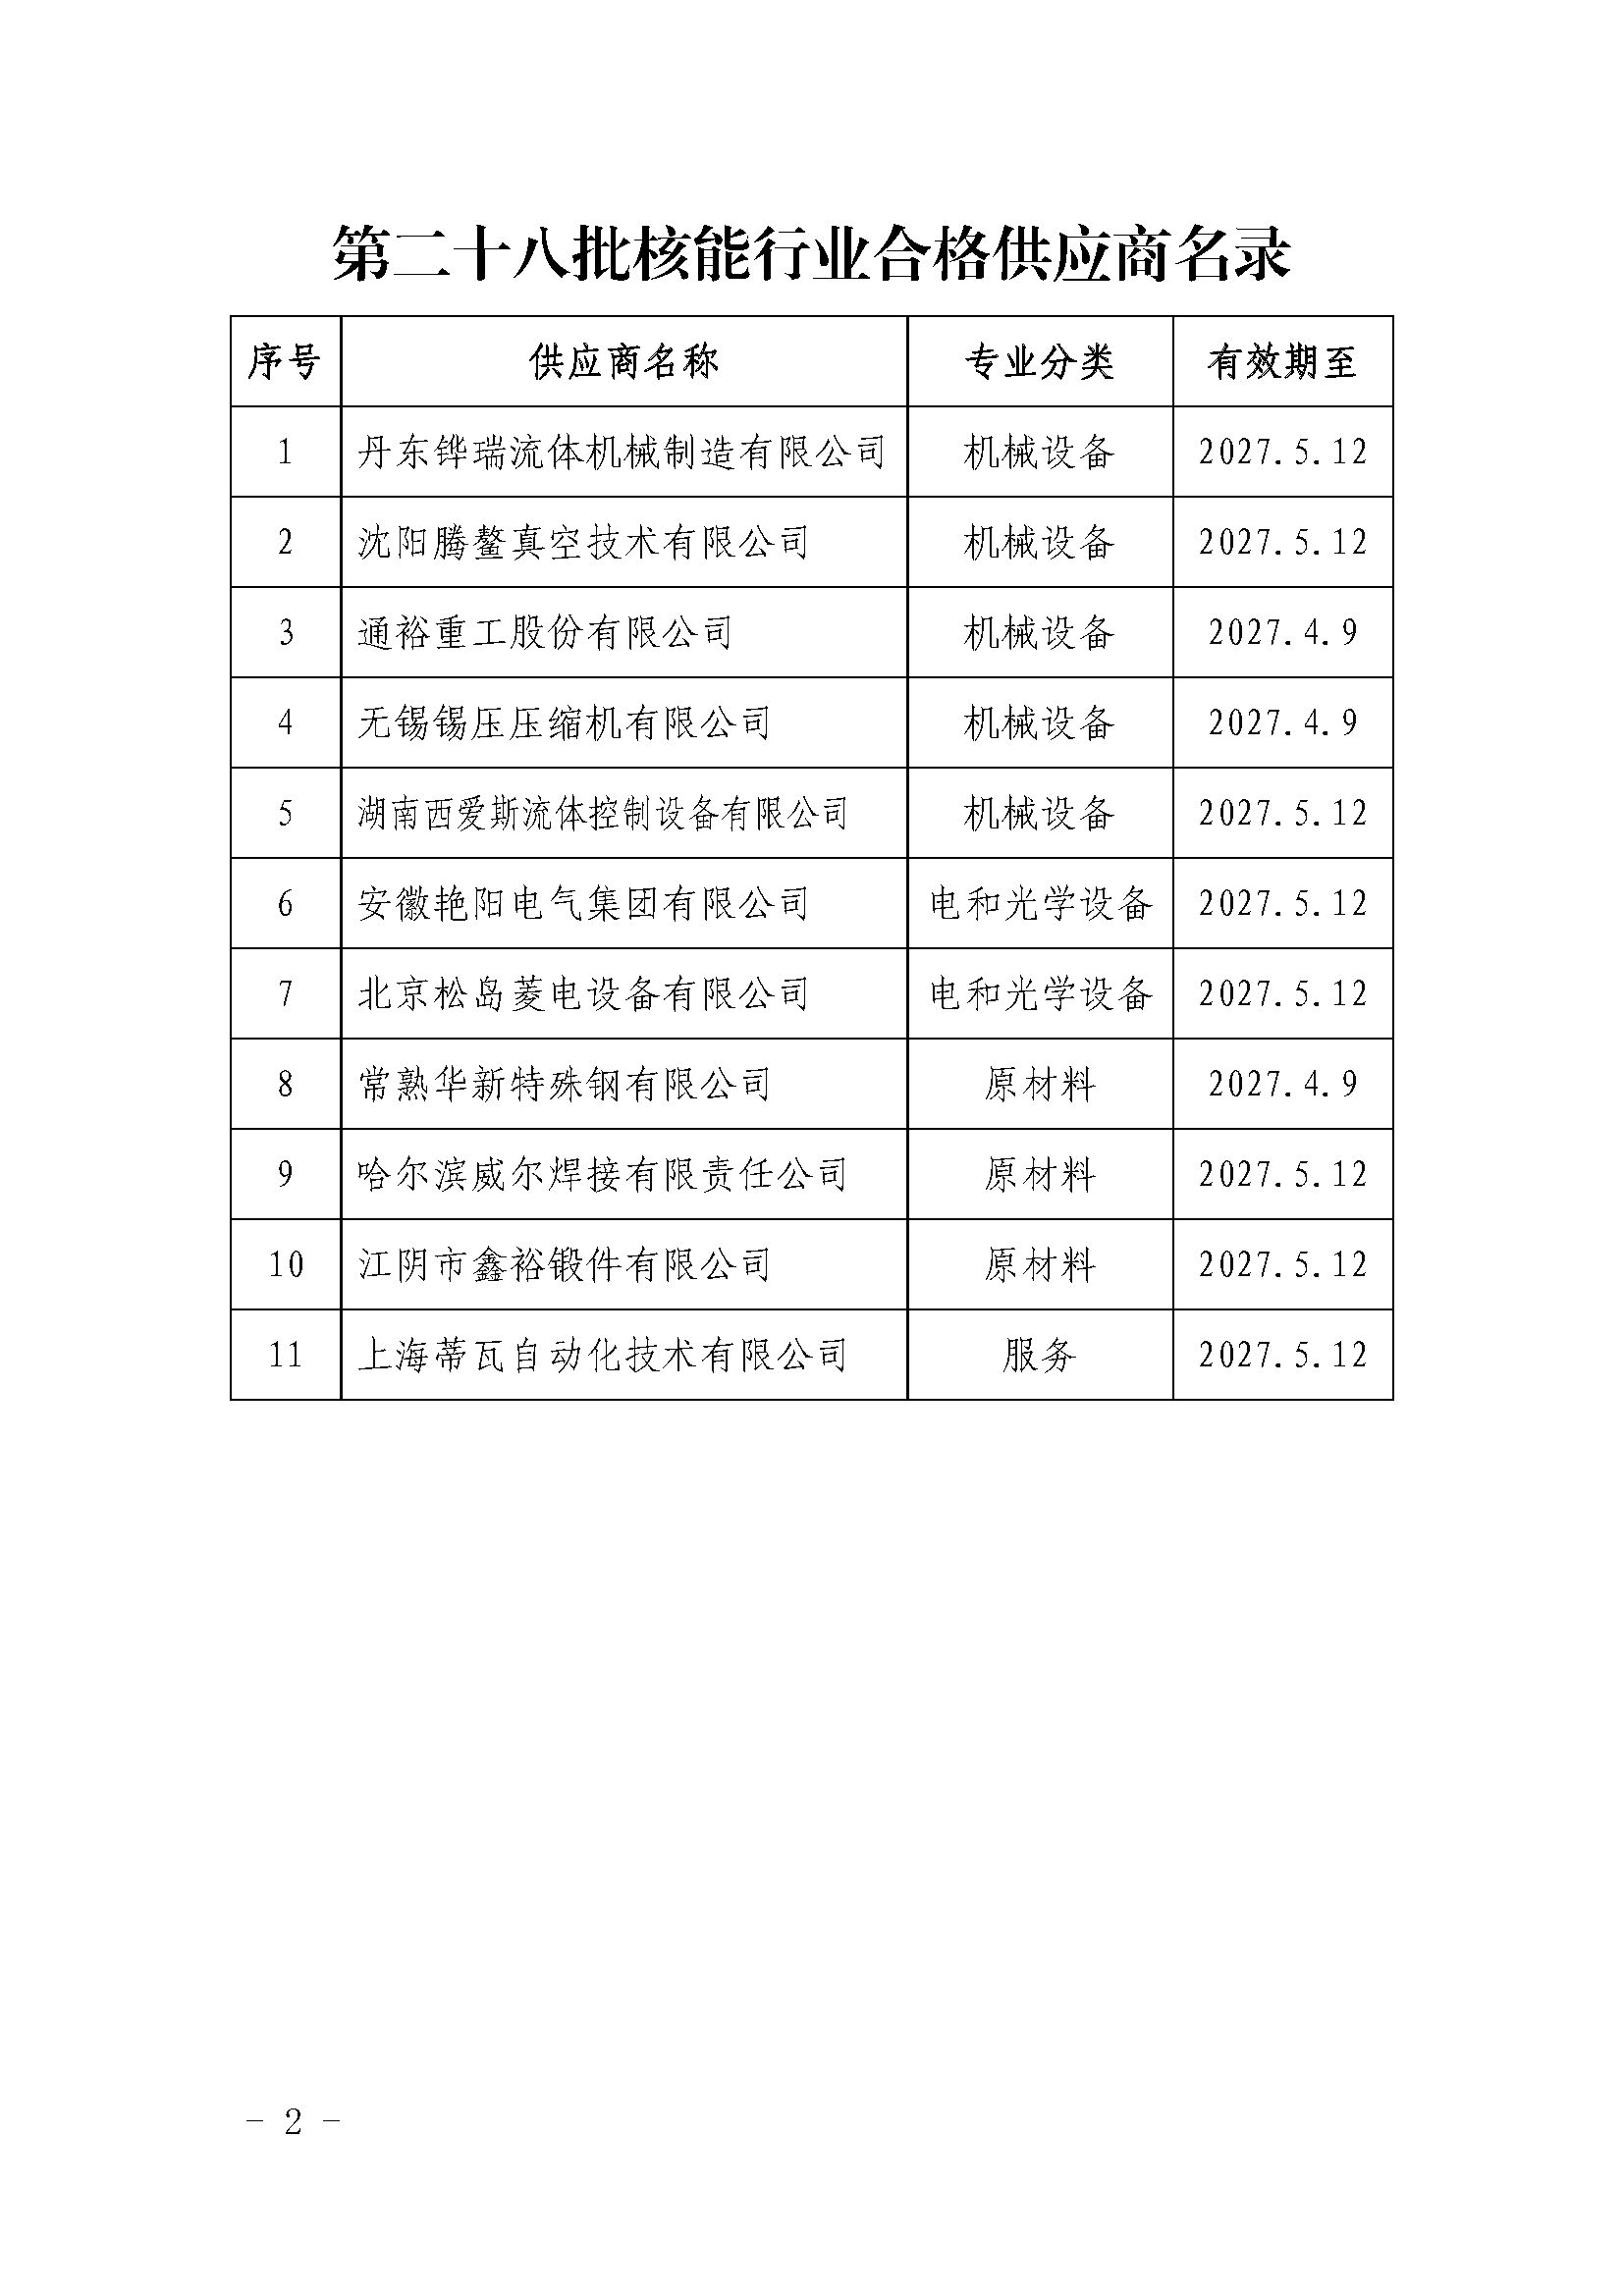 中国核能行业协会关于发布第二十八批核能行业合格供应商名录的公告_页面_2.jpg